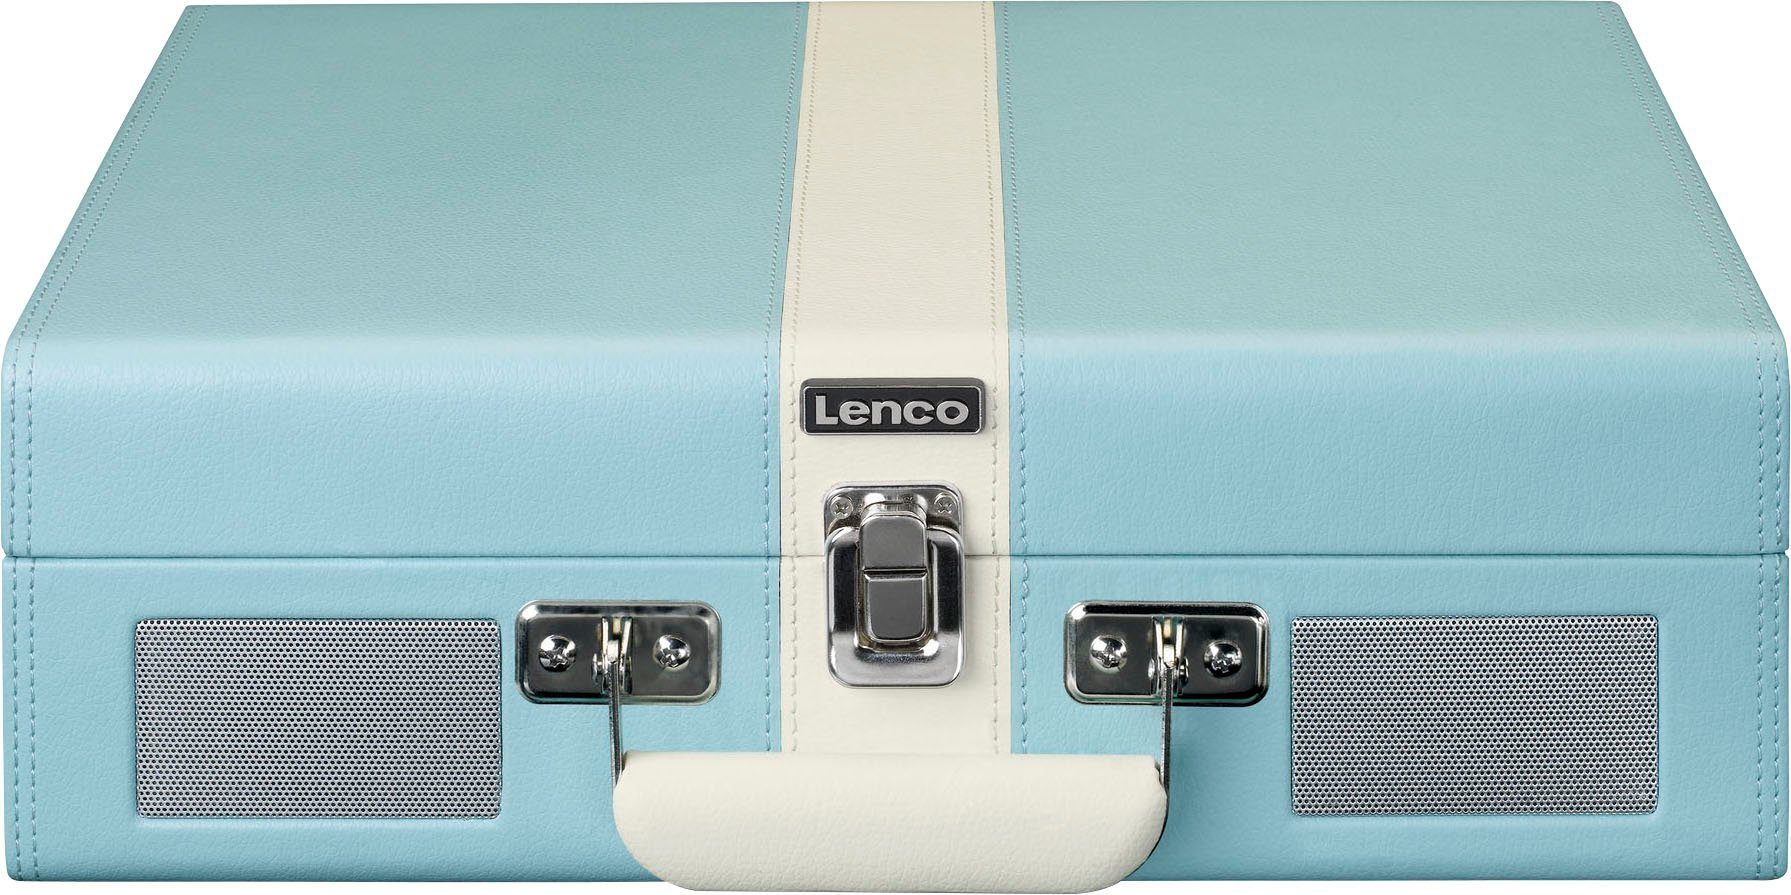 Lenco Koffer-Plattenspieler mit und BT Plattenspieler Blau-Weiß eingebauten (Riemenantrieb) Lsp